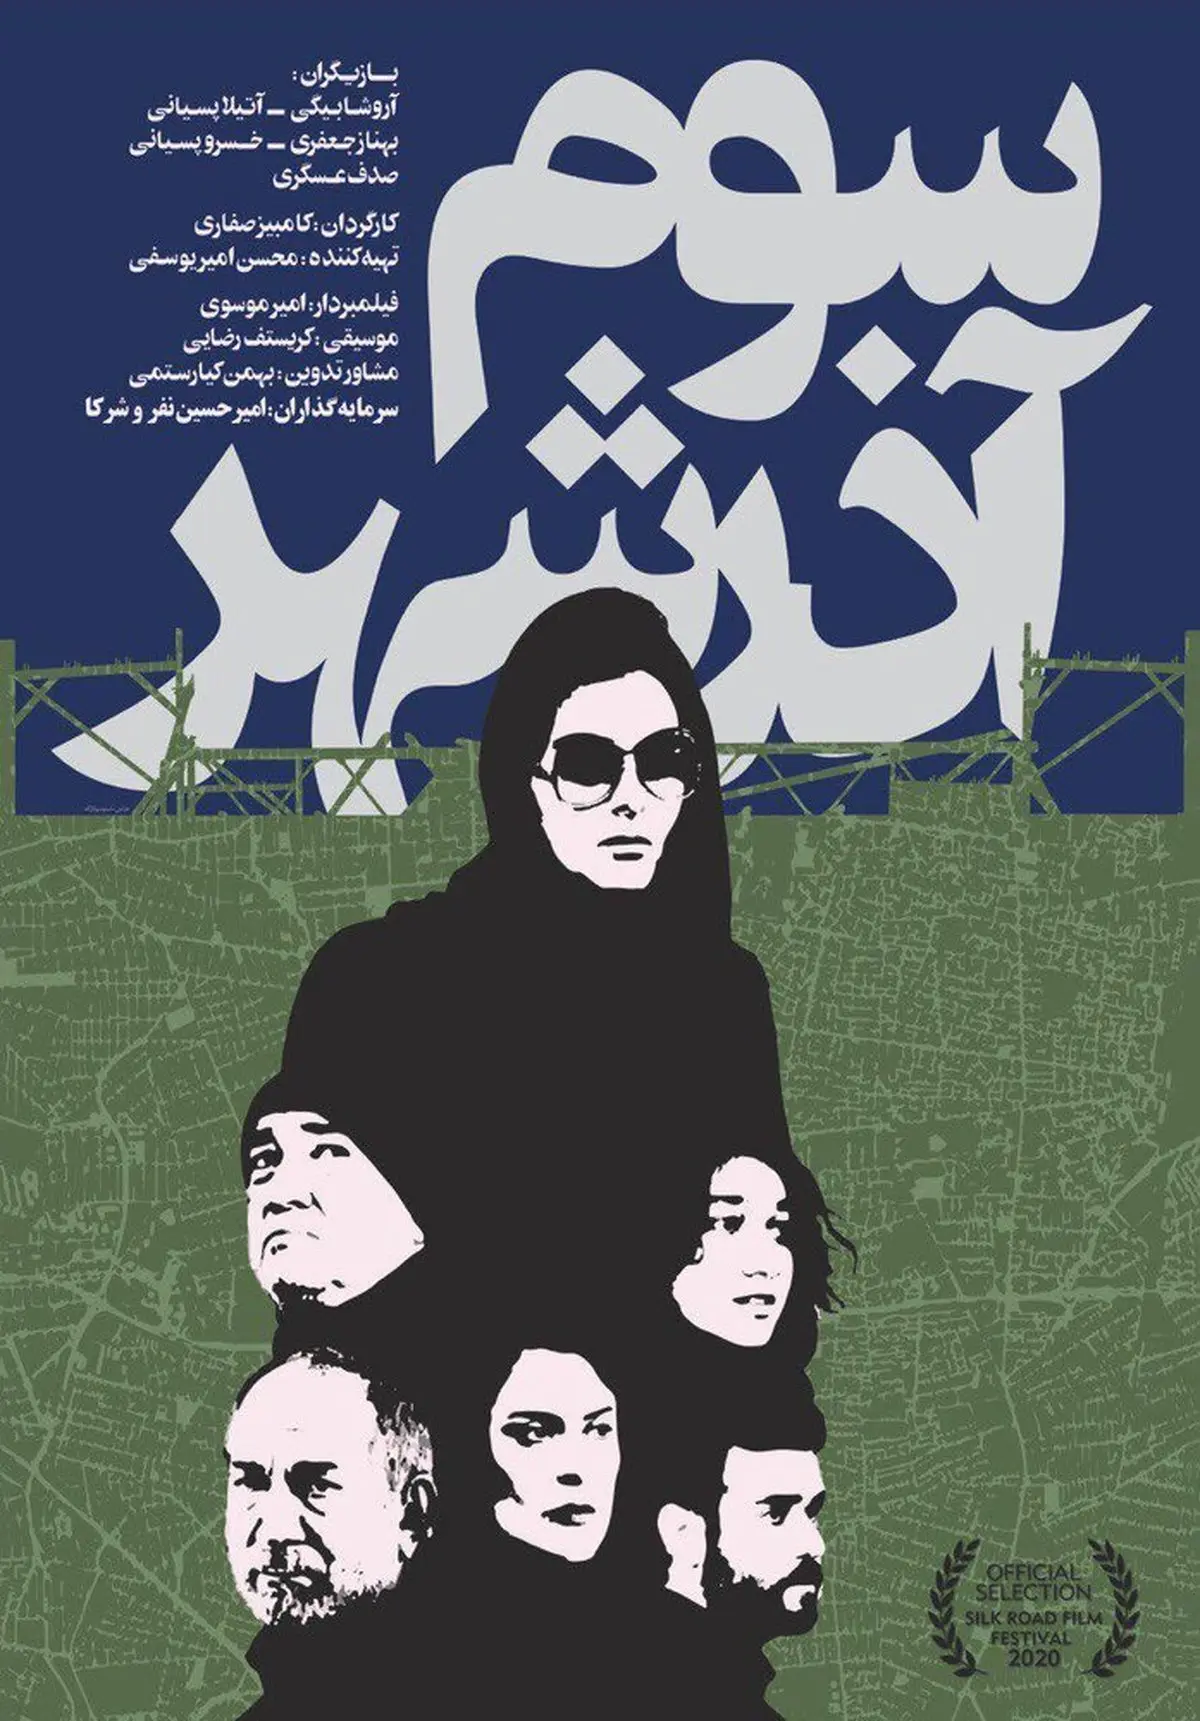 رونمایی از پوستر «سوم آذرشهر» با تصاویر آتیلا پسیانی، بهناز جعفری و آروشا بیگی